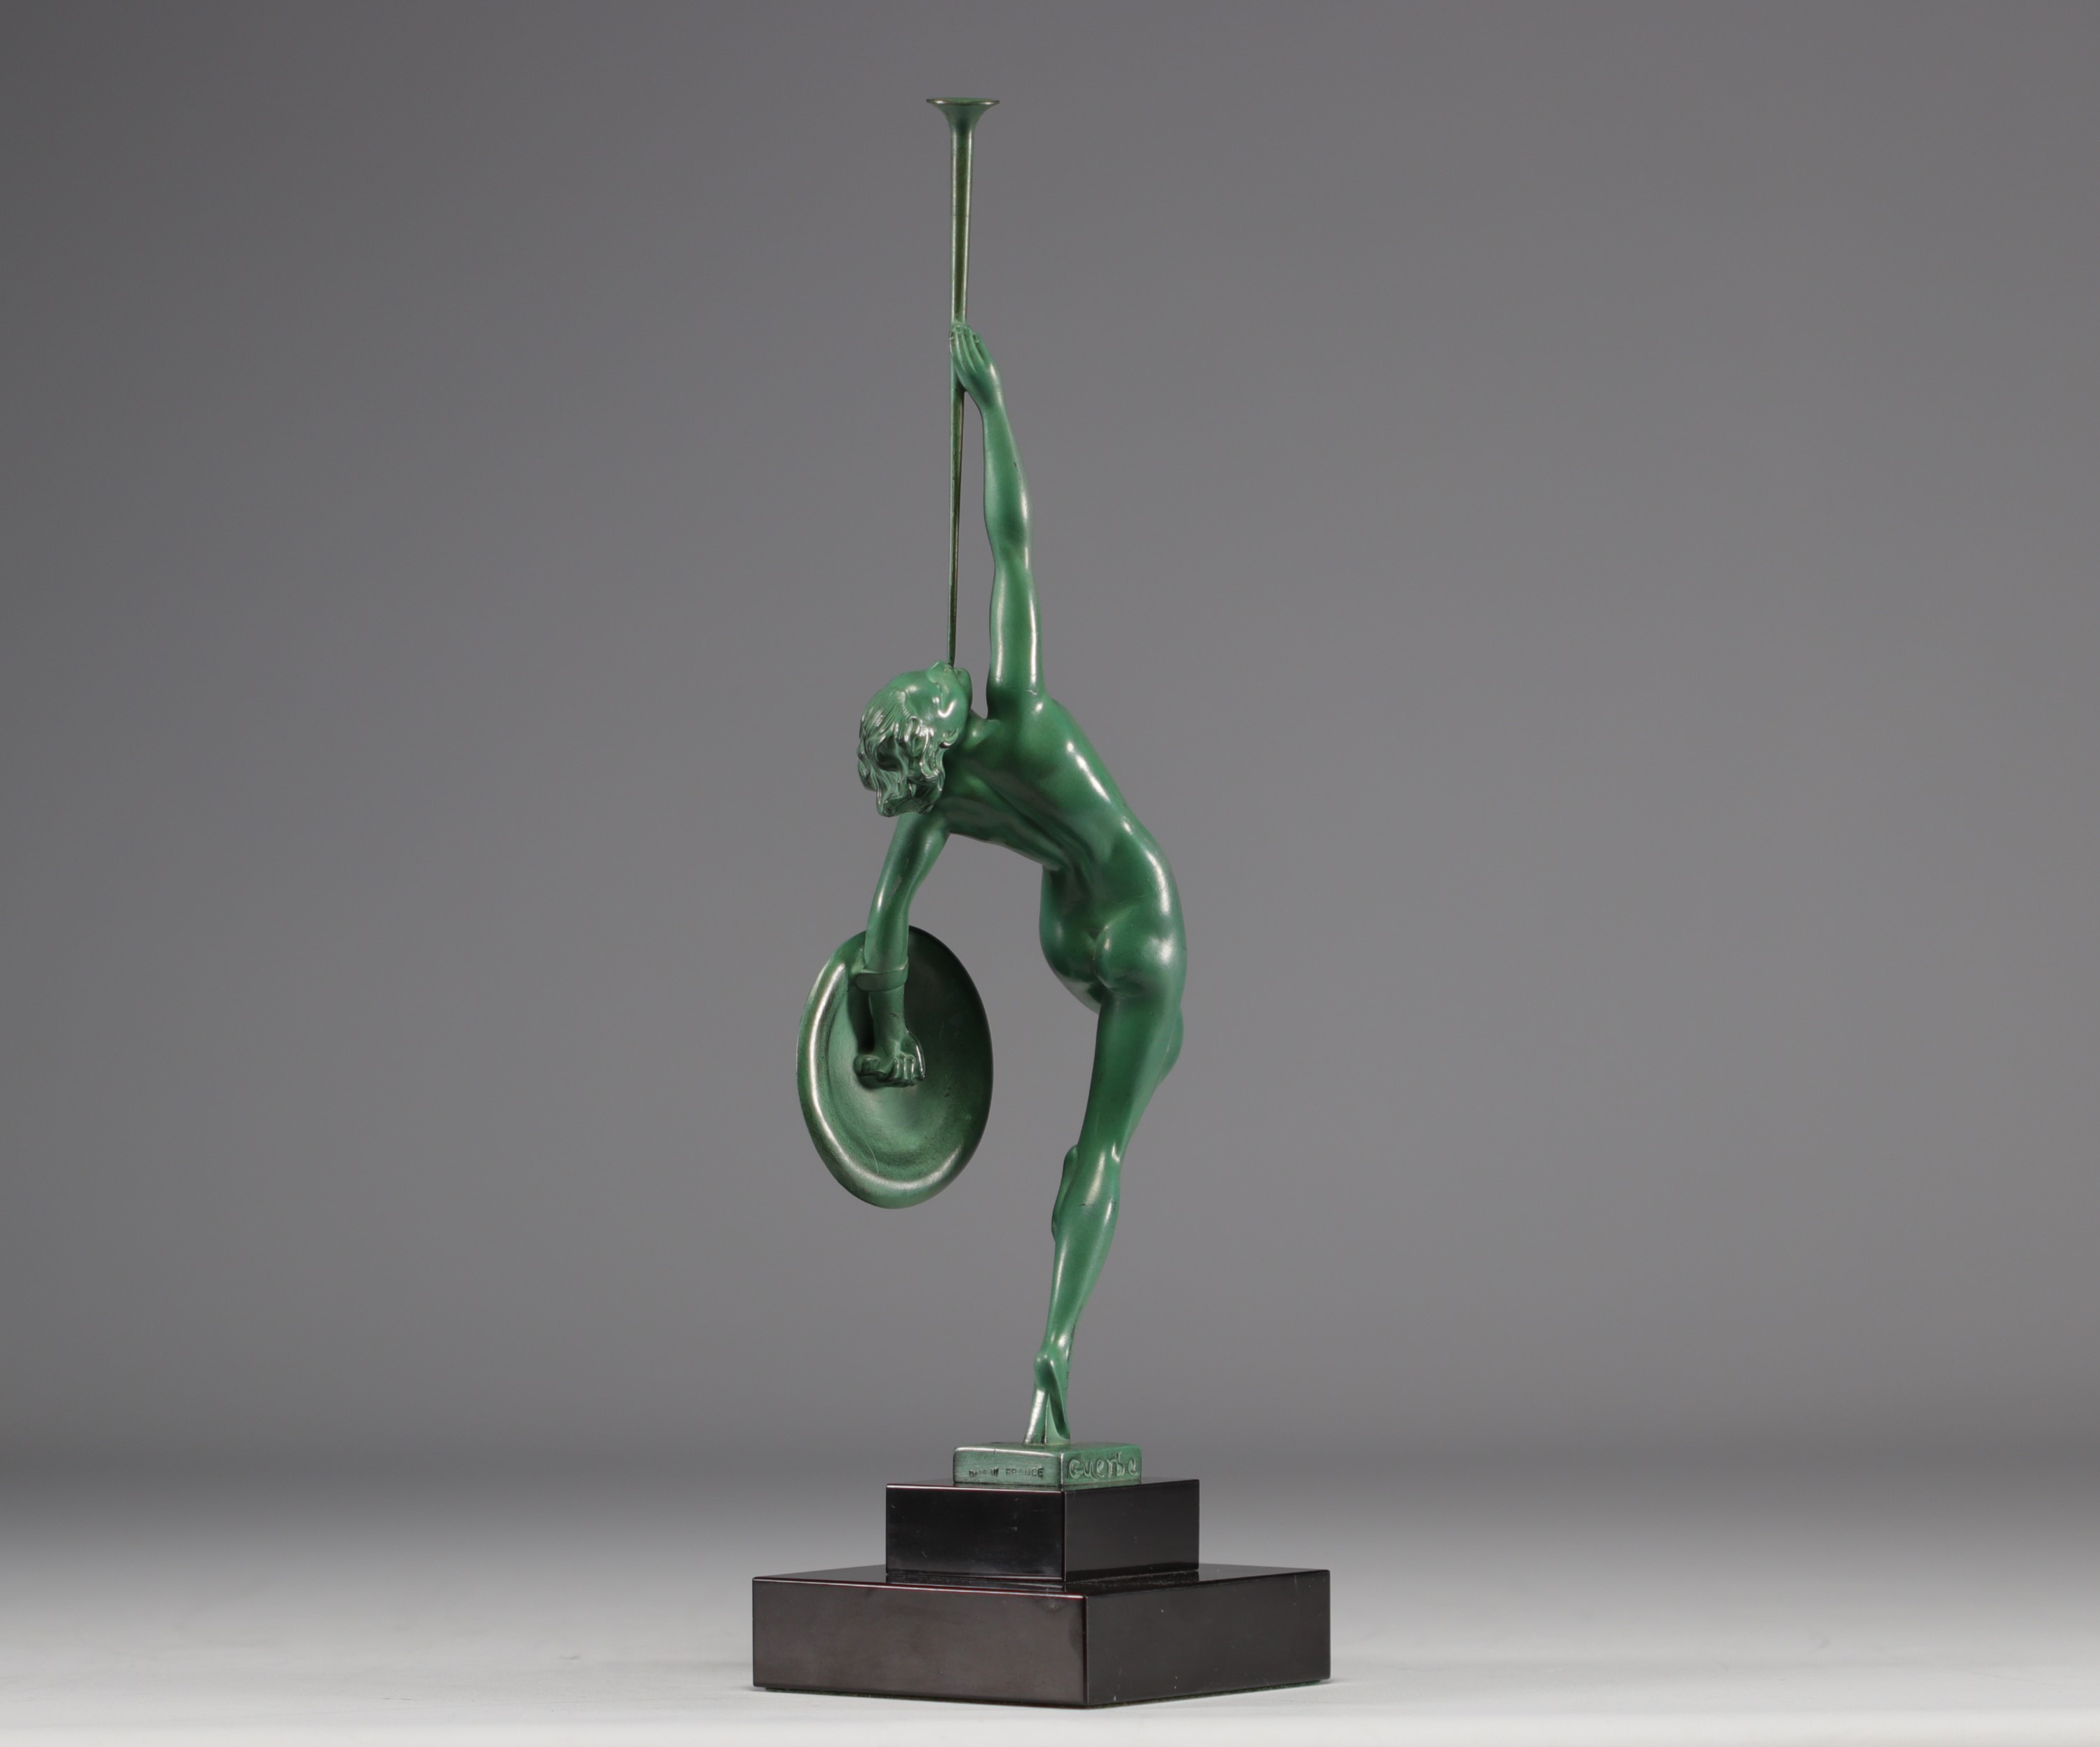 Raymond GUERBE (1894-1995), Max LE VERRIER's workshop, "Jericho" Art Deco sculpture. - Image 2 of 5